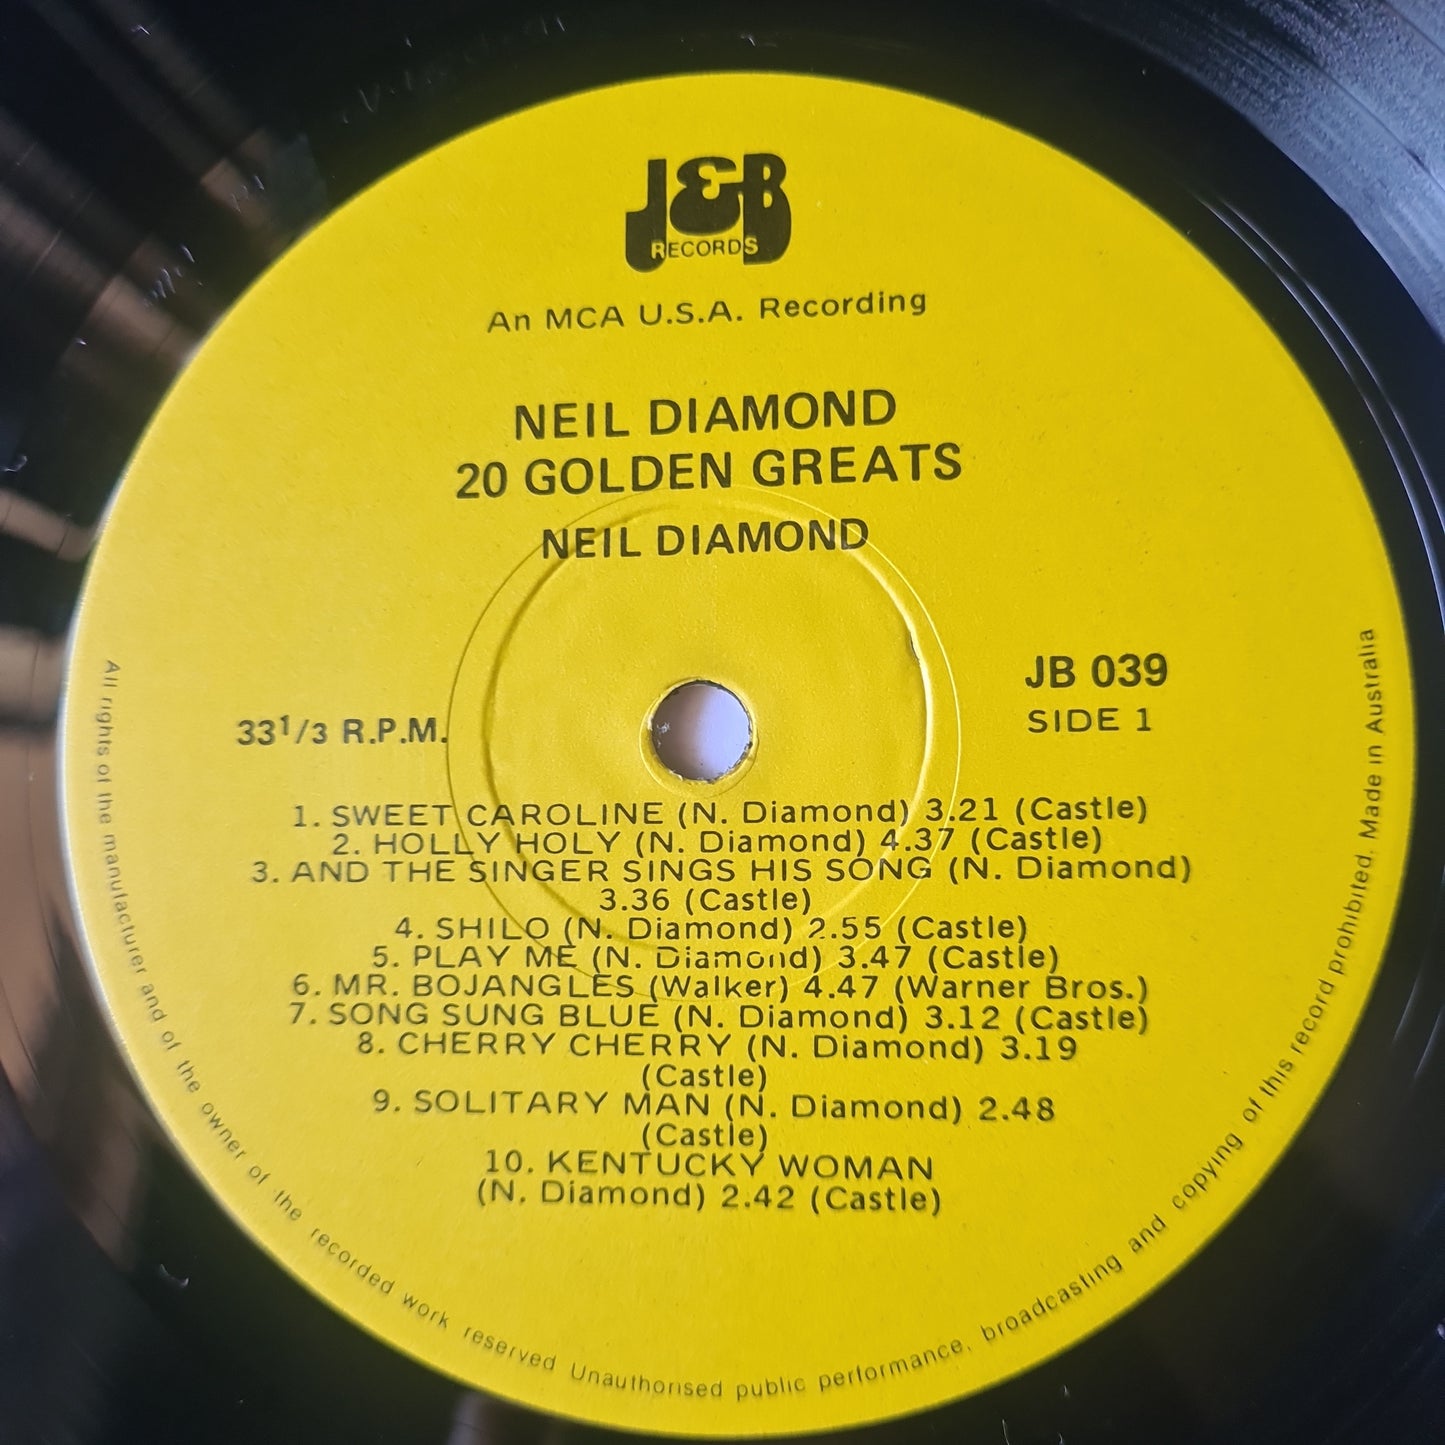 Neil Diamond – Neil Diamond 20 Golden Greats - 1978 - Vinyl Record